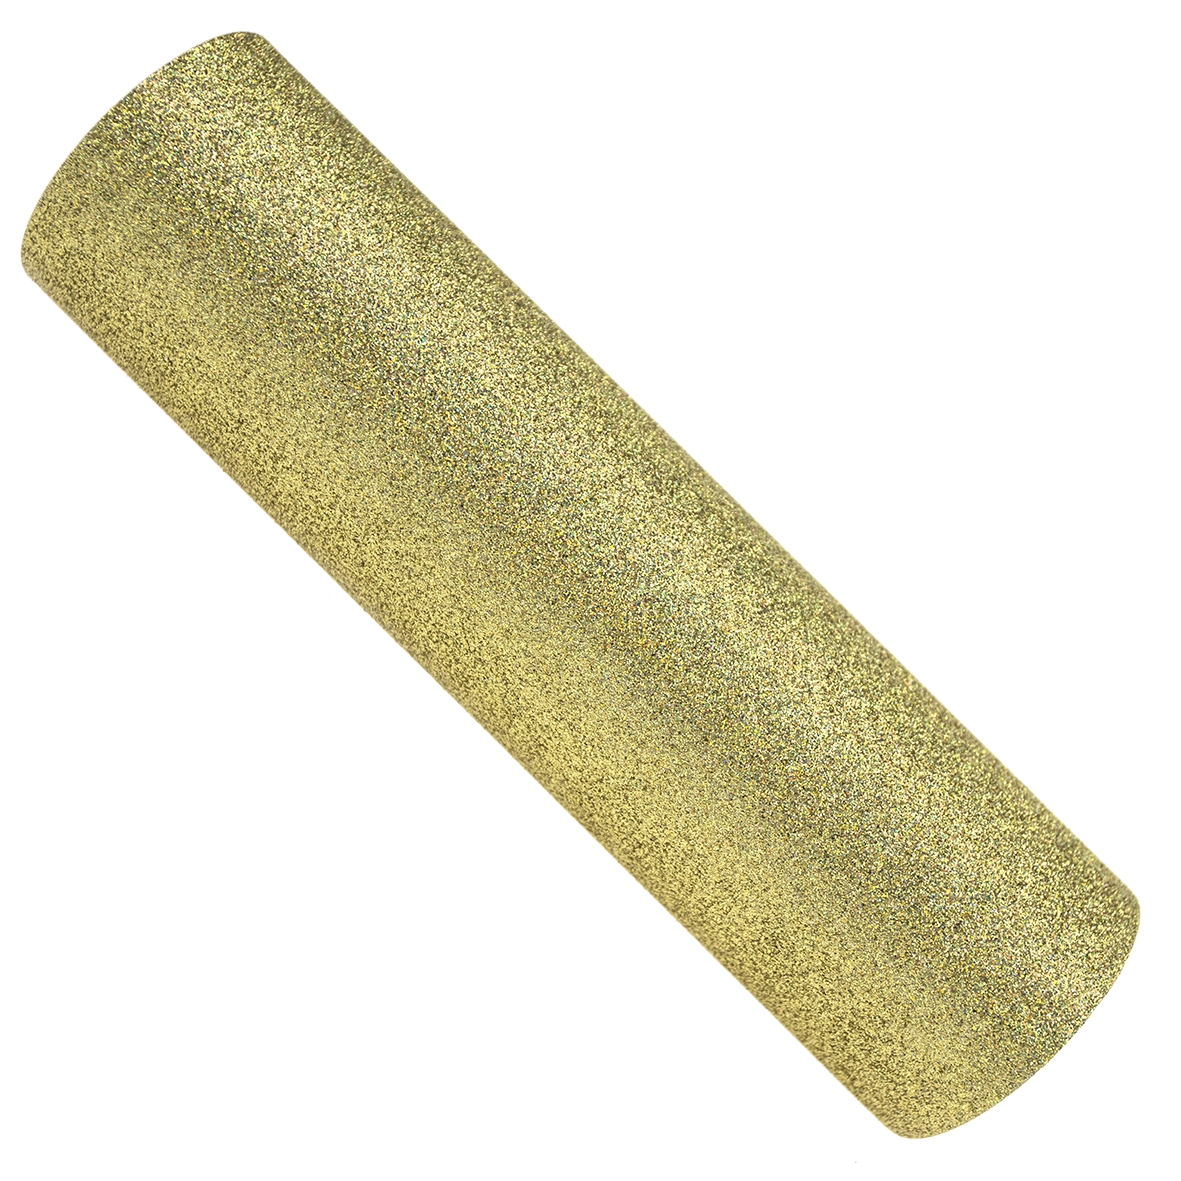 Iridescent Antique Gold A4 Glitter Card